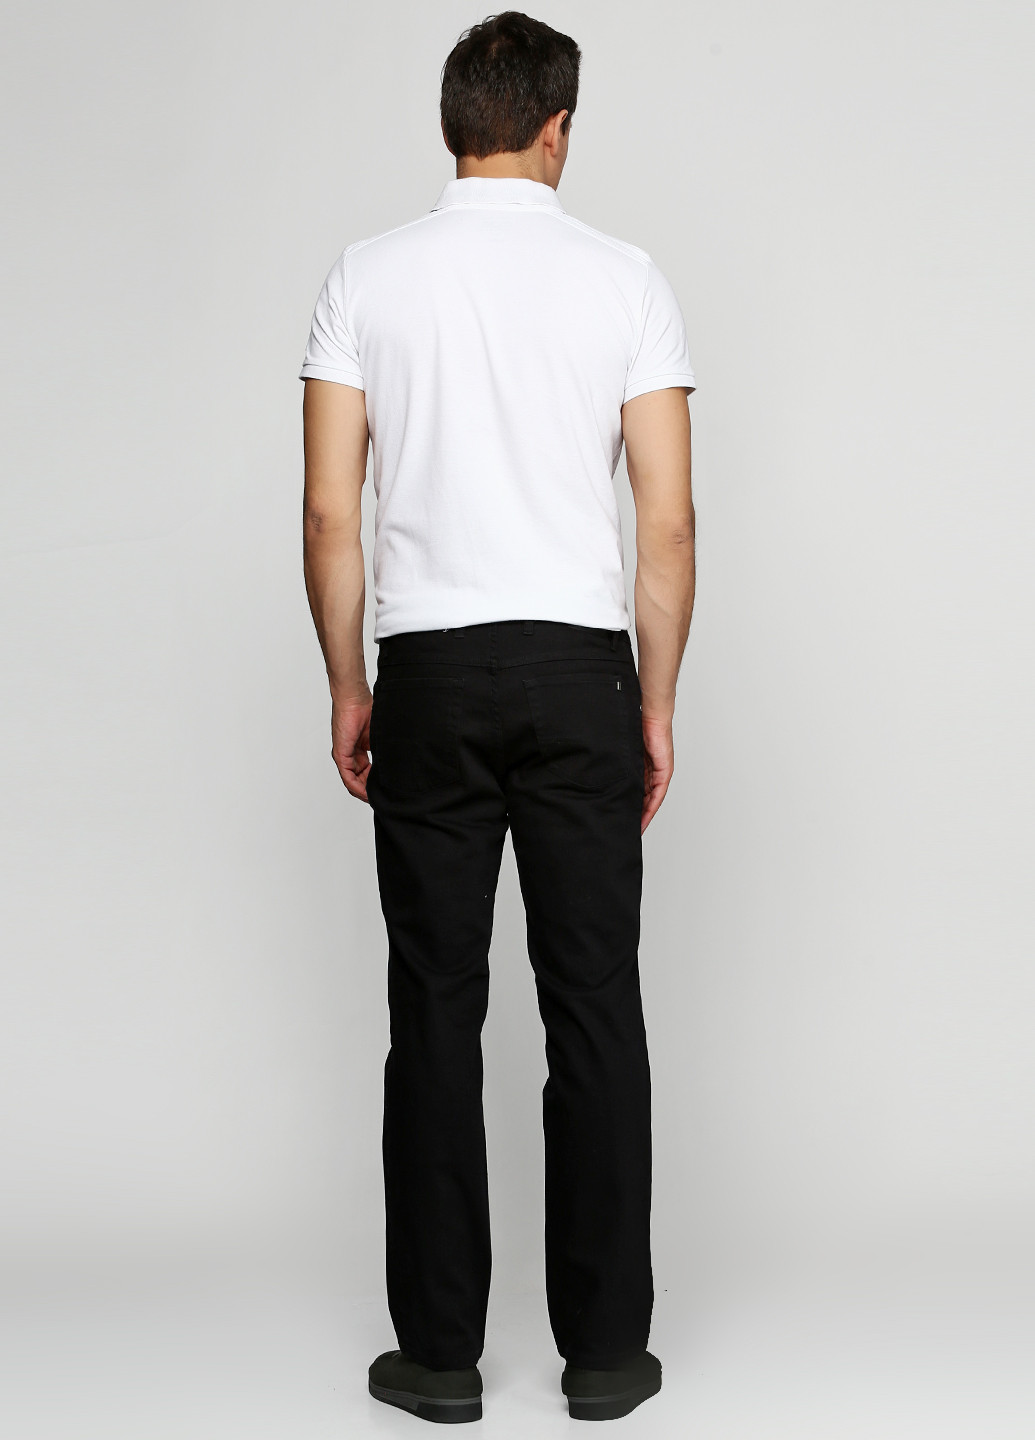 Черные демисезонные со средней талией джинсы Pioneer